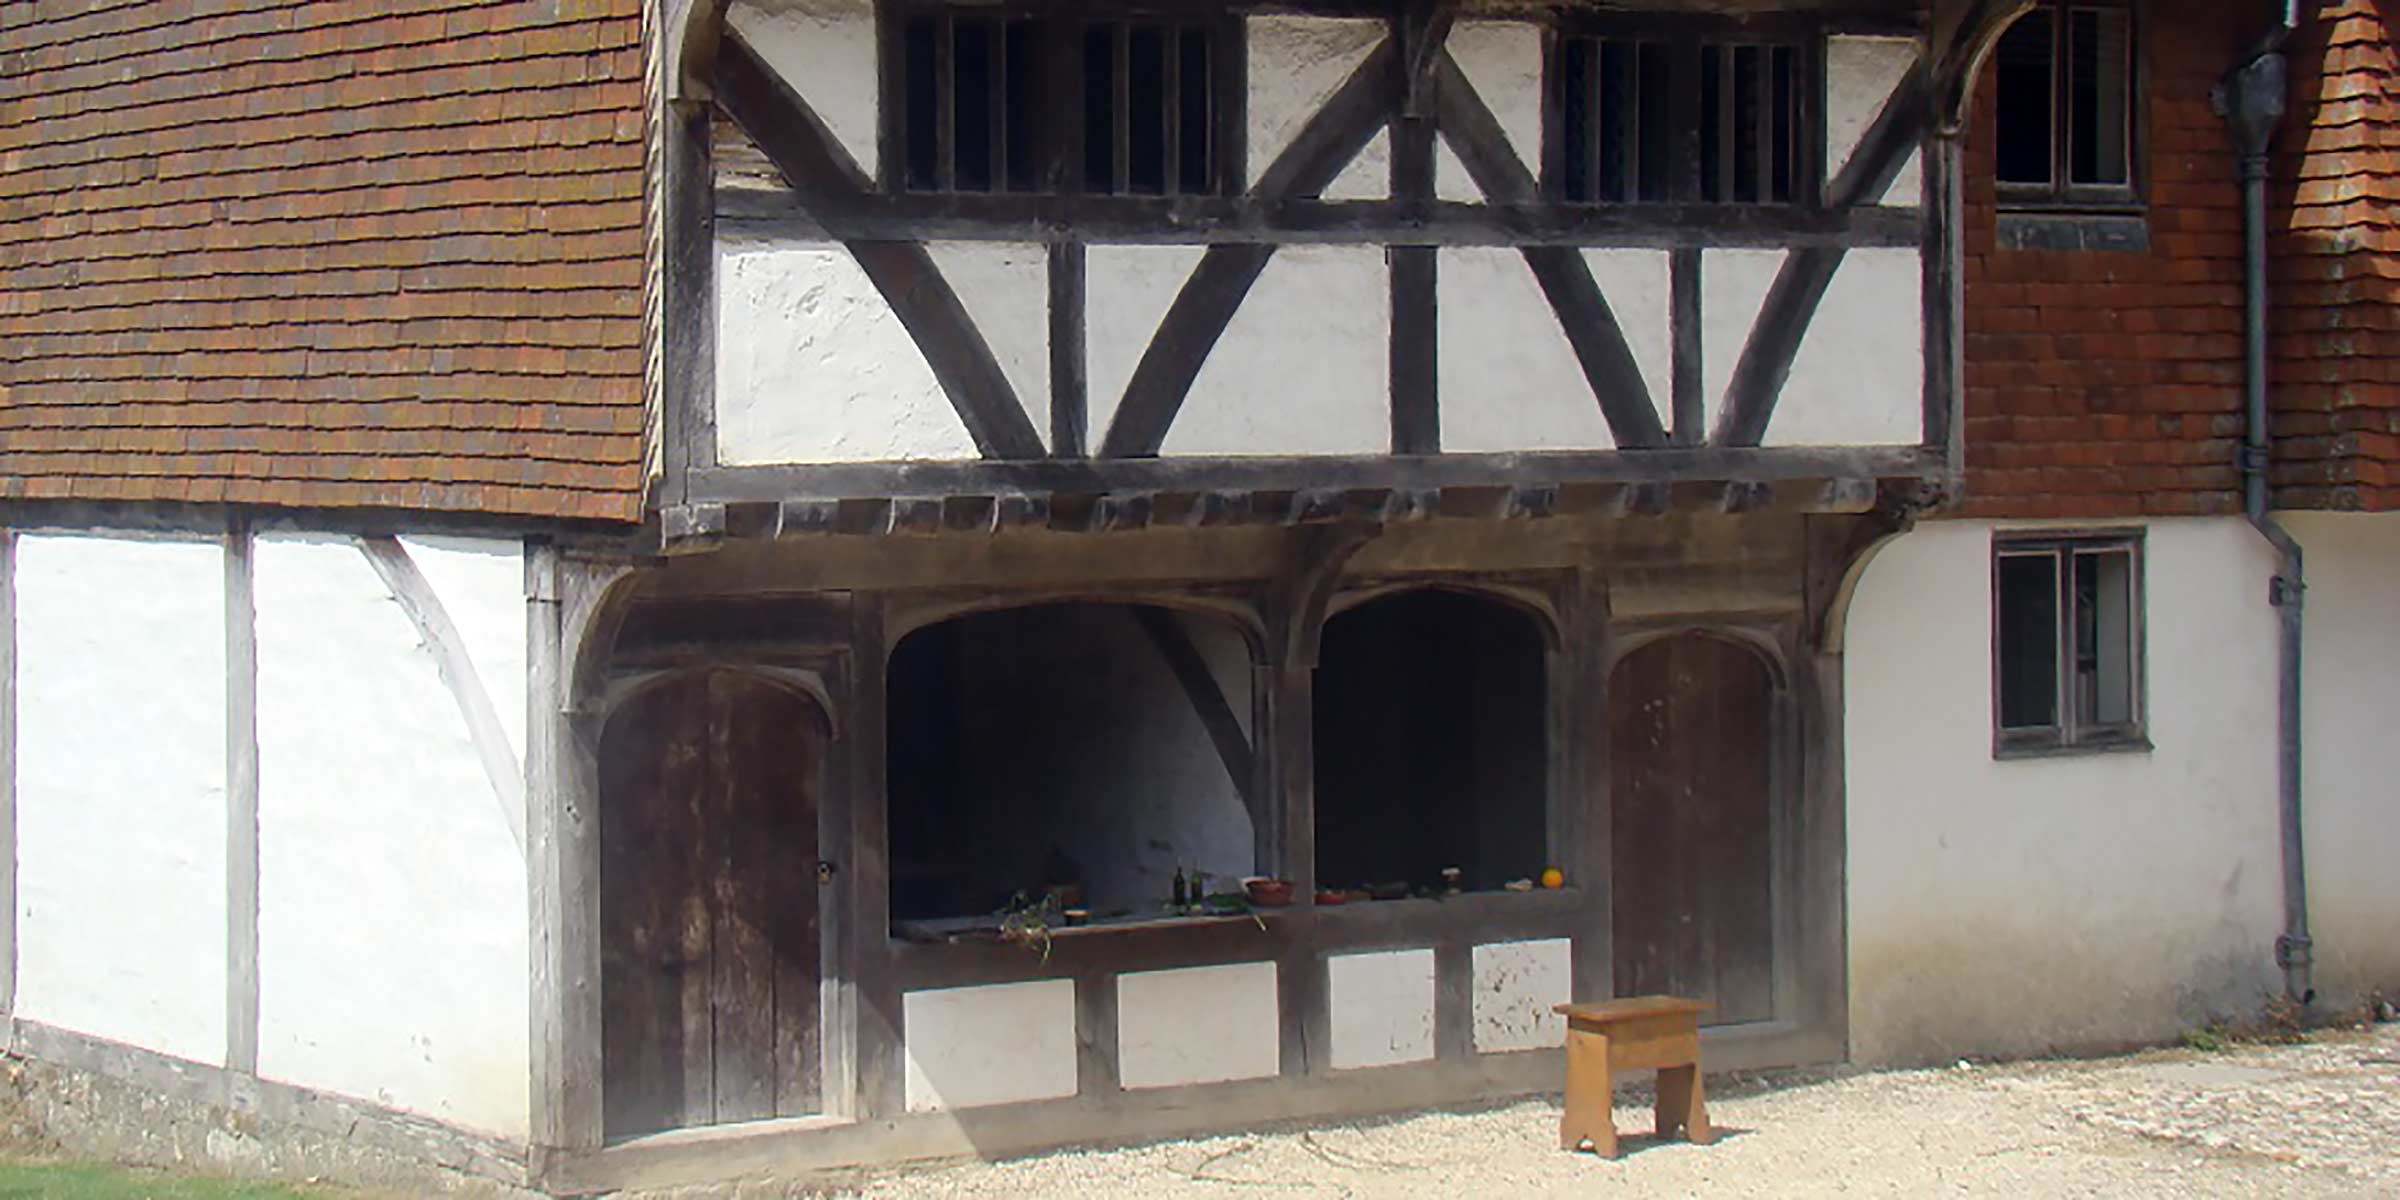 Horsham Medieval Shop, Sussex